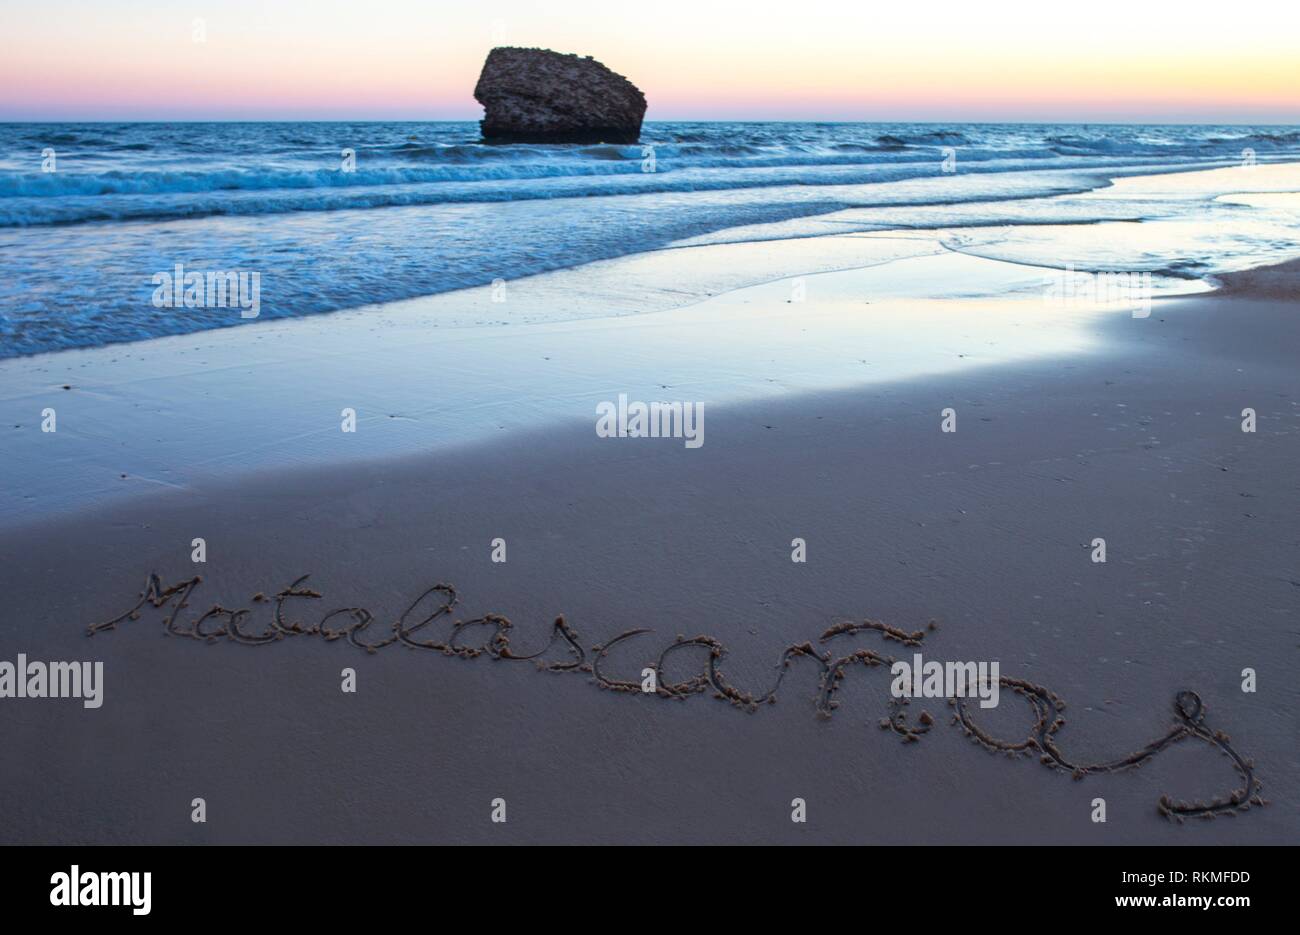 Matalacanas beach pendant le magnifique lever du soleil. Sur le sable est écrit le nom. Huelva, Espagne. Banque D'Images